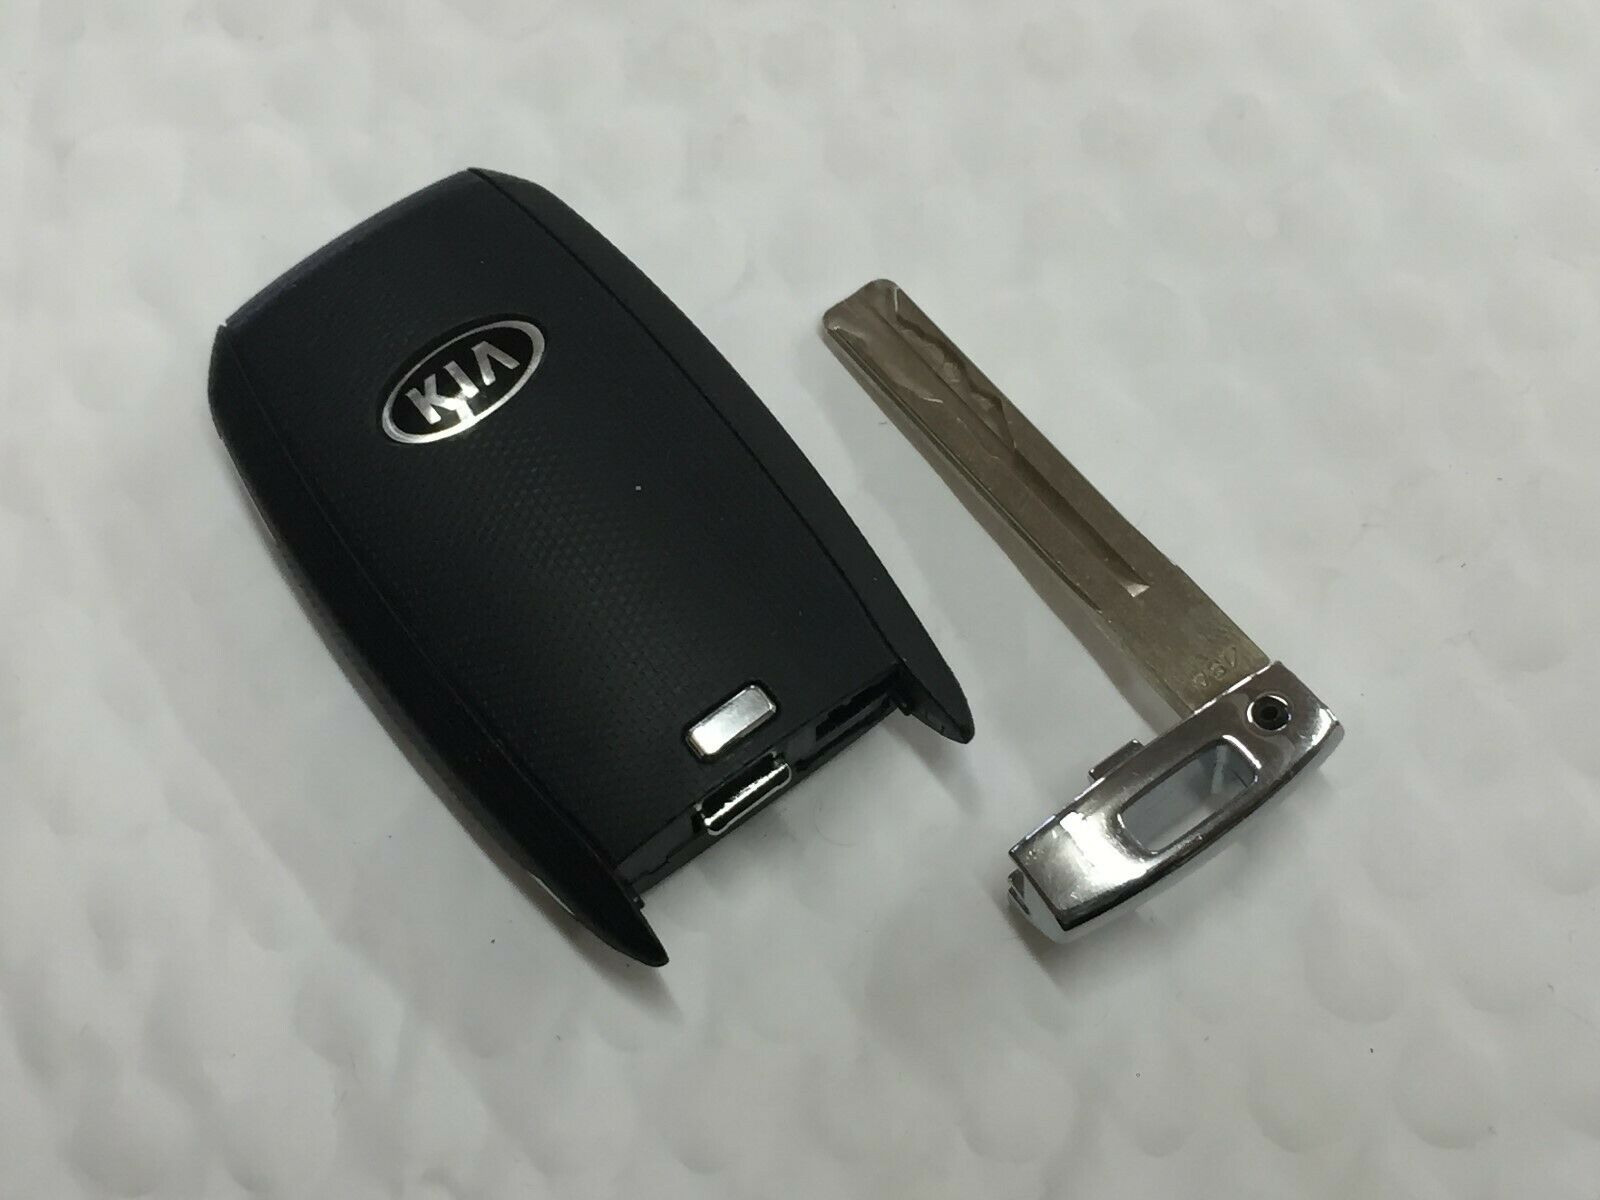 2019 Kia Sportage Keyless Entry Remote Tq8-Fob-4f08 4 Buttons Suv - Oemusedautoparts1.com